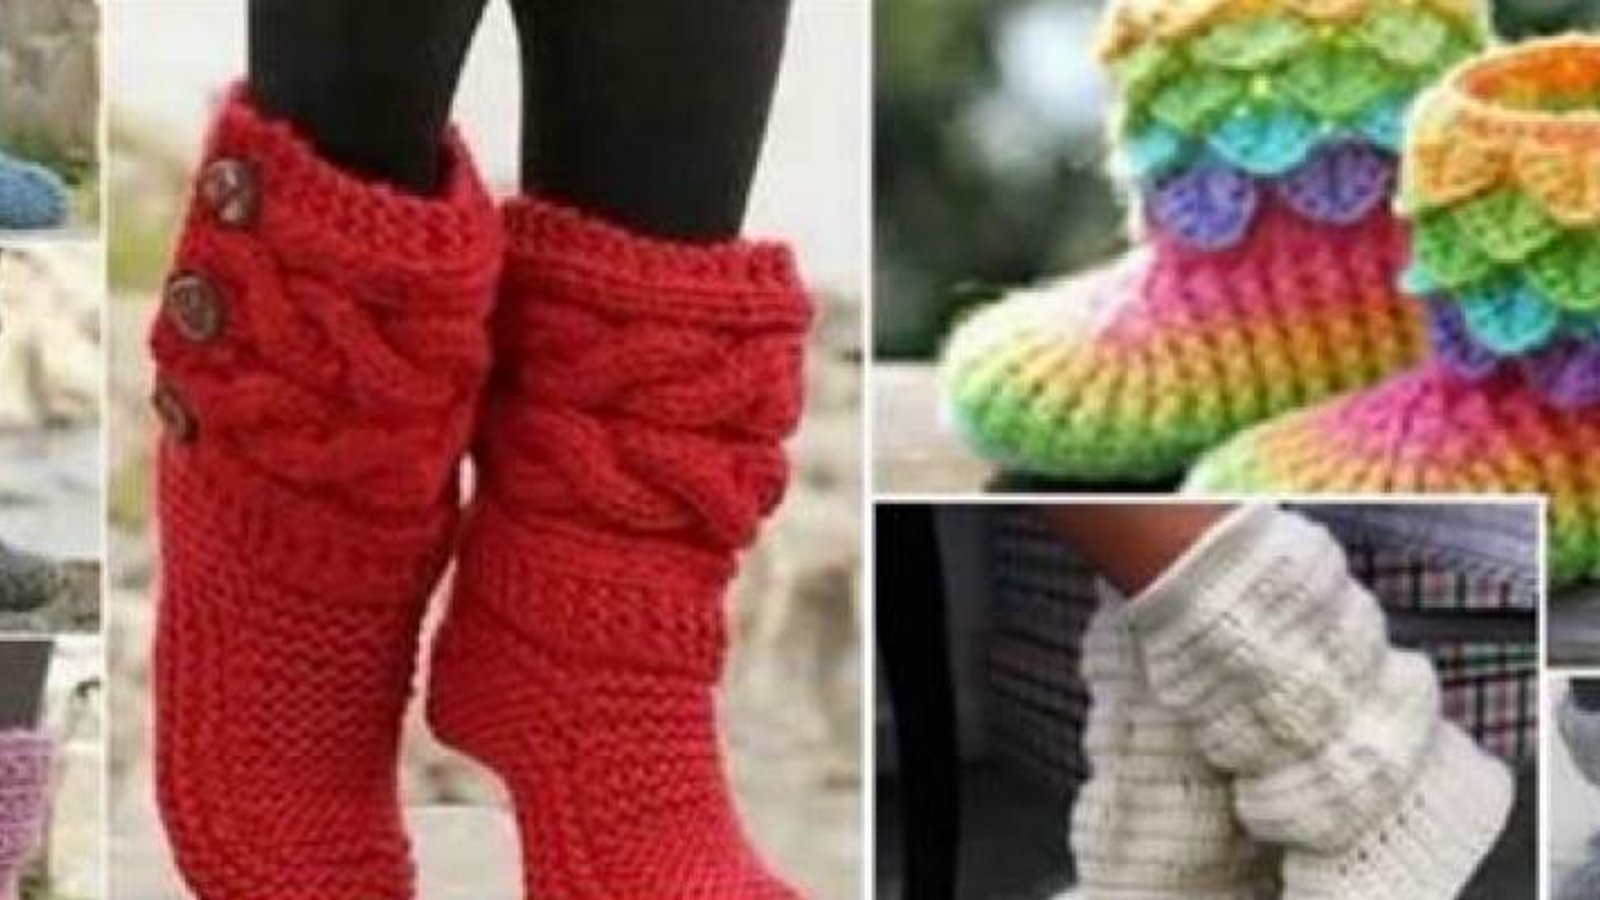 Gardez vos pieds au chaud cet hiver! Voici comment faire vos propres pantoufles! 5 modèles que vous aimerez!